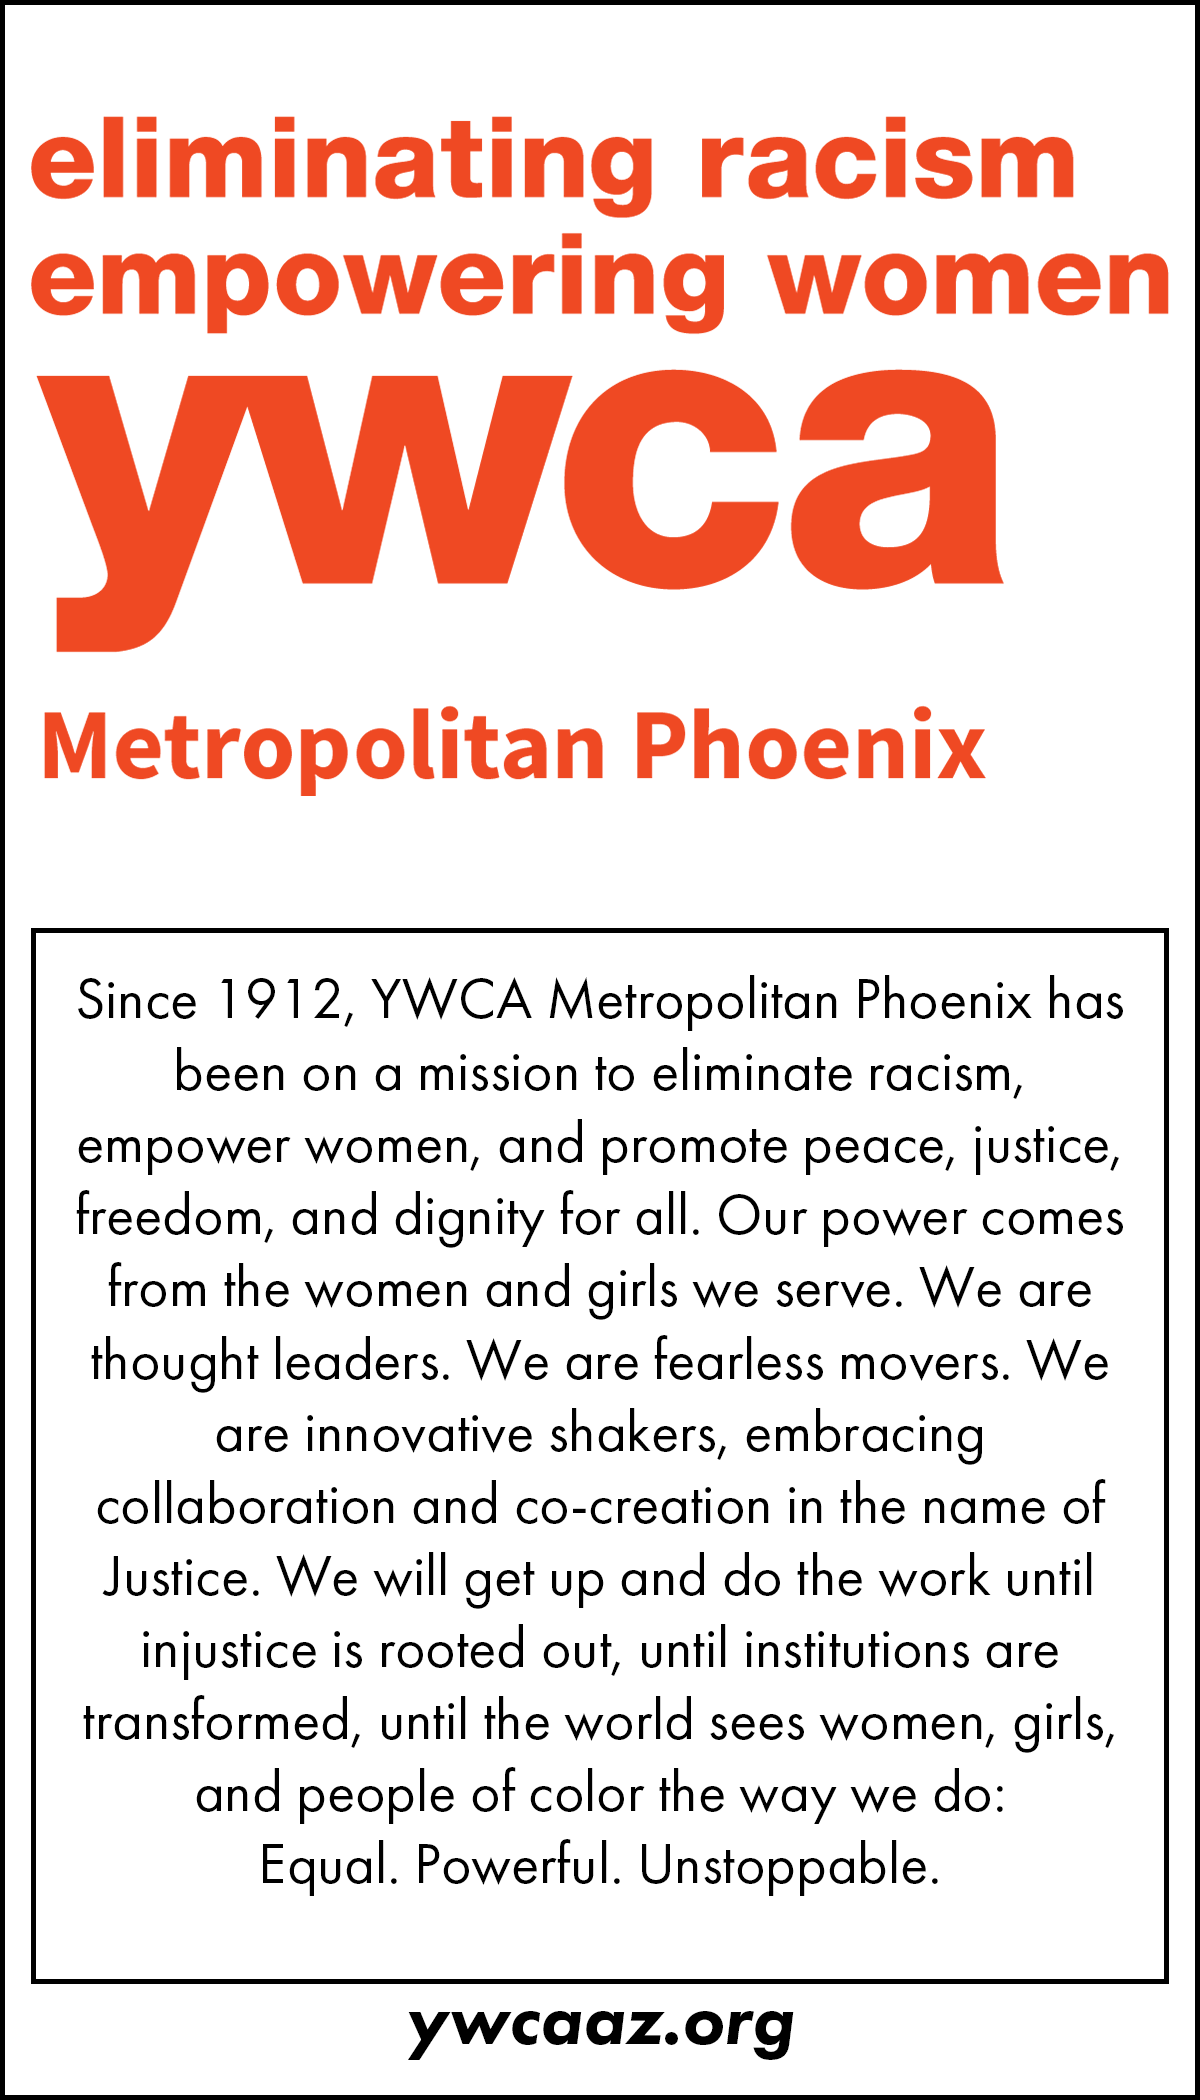 YWCA Metro Phx